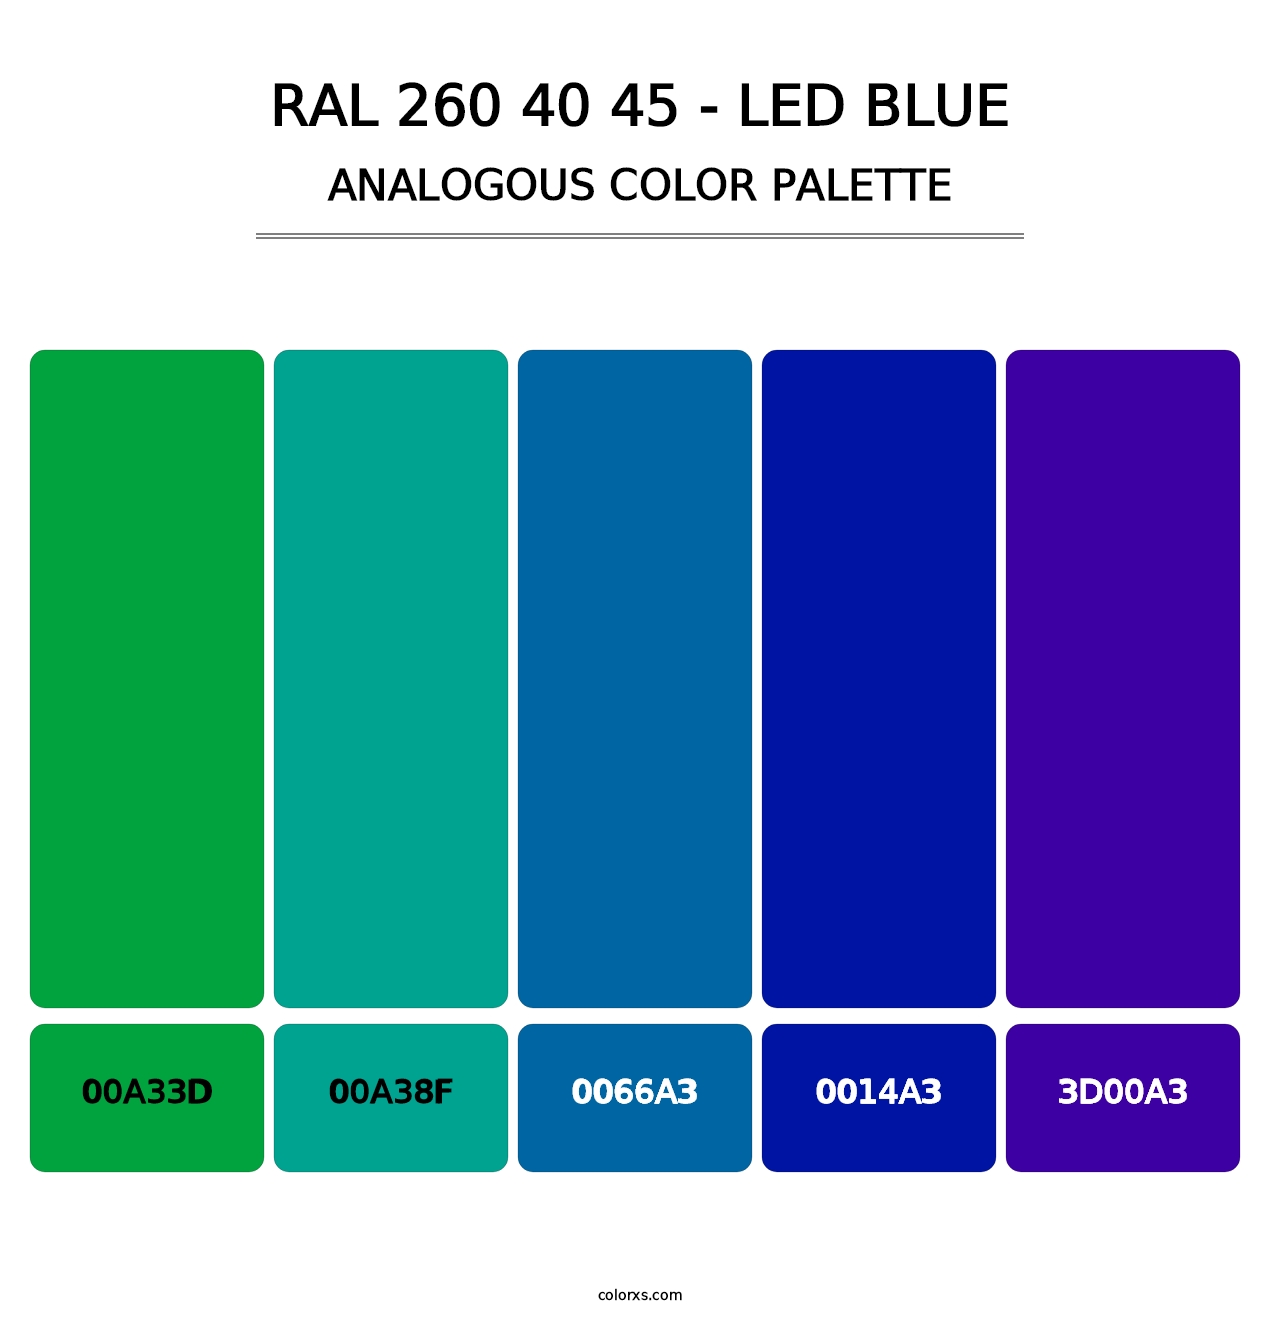 RAL 260 40 45 - LED Blue - Analogous Color Palette